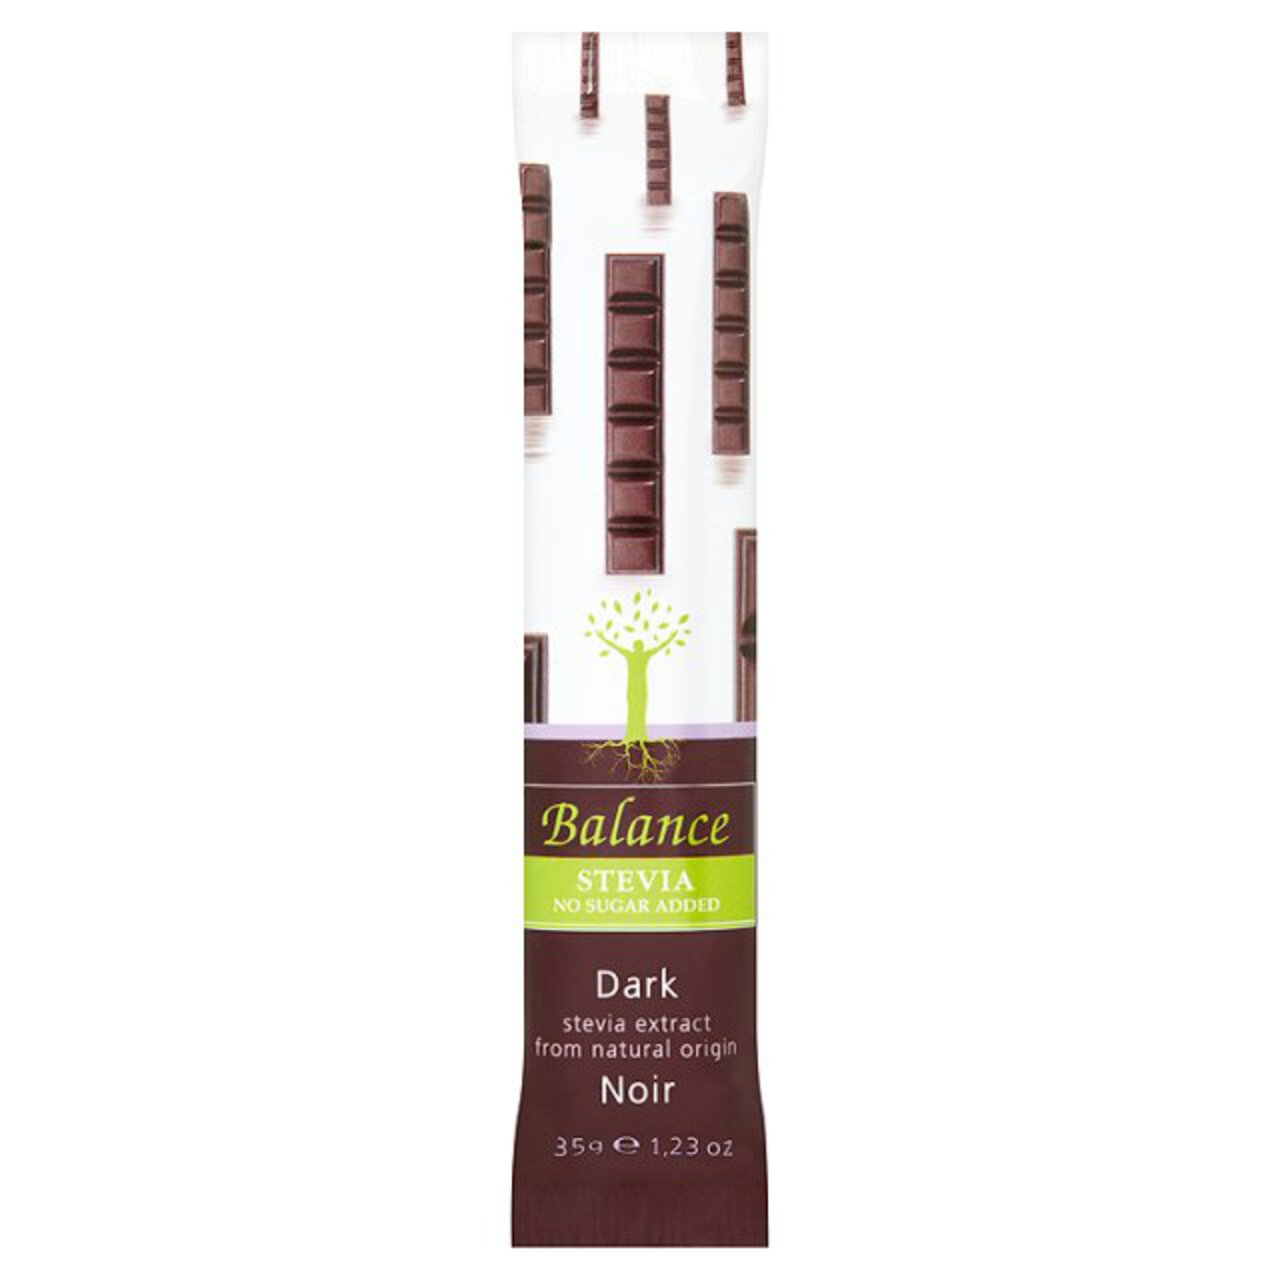 Balance Stevia Chocolate Dark 35g